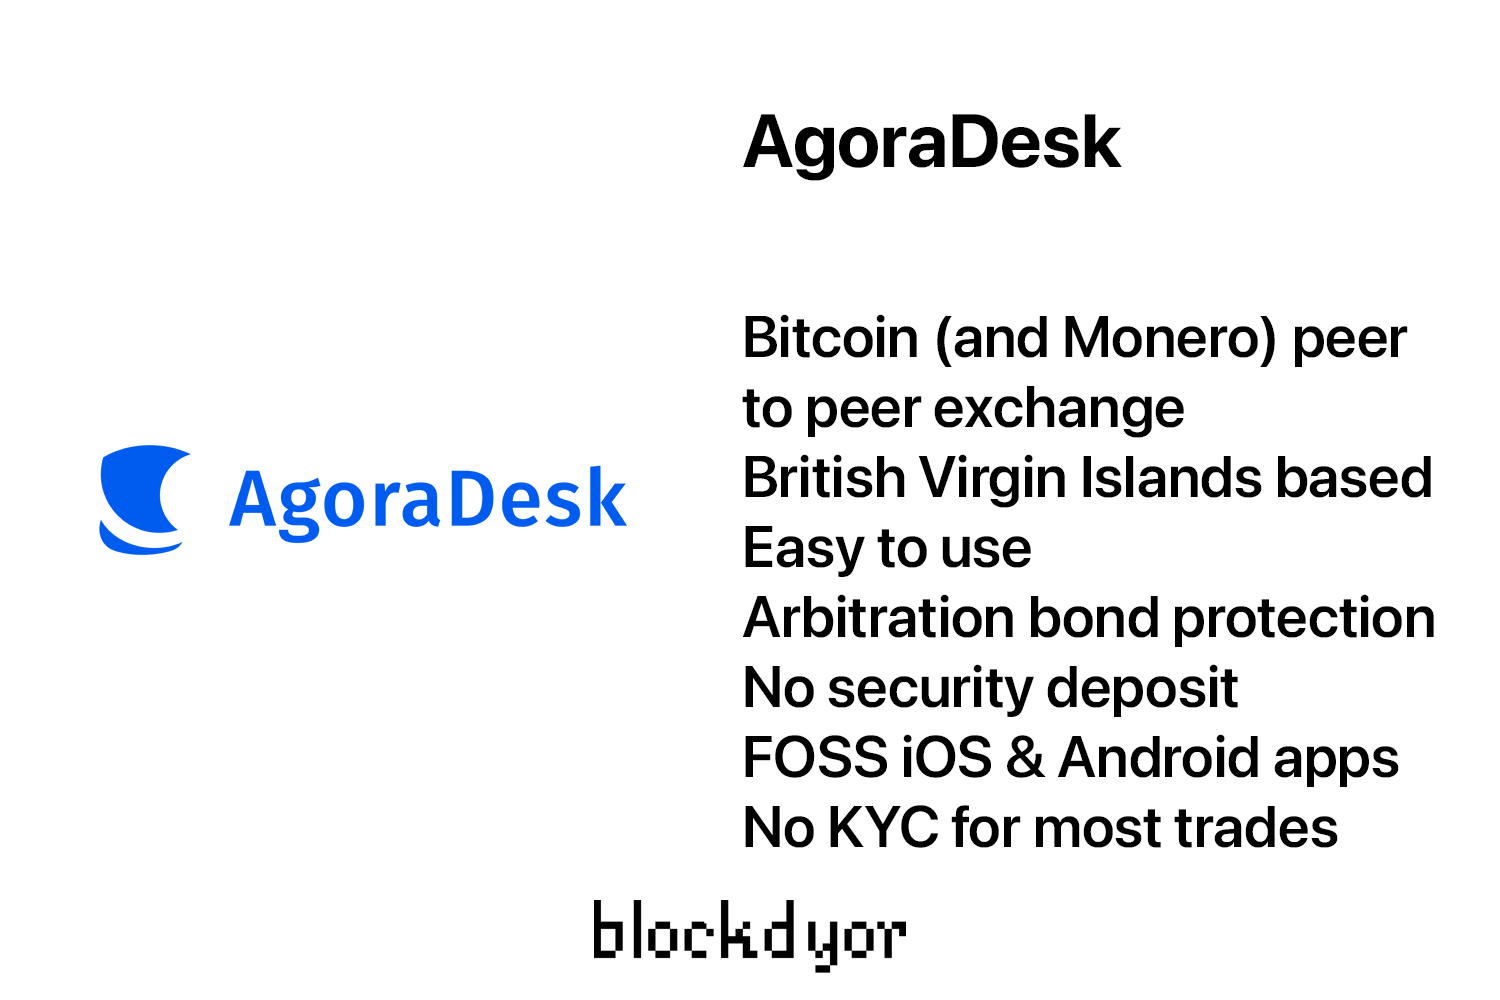 AgoraDesk Overview